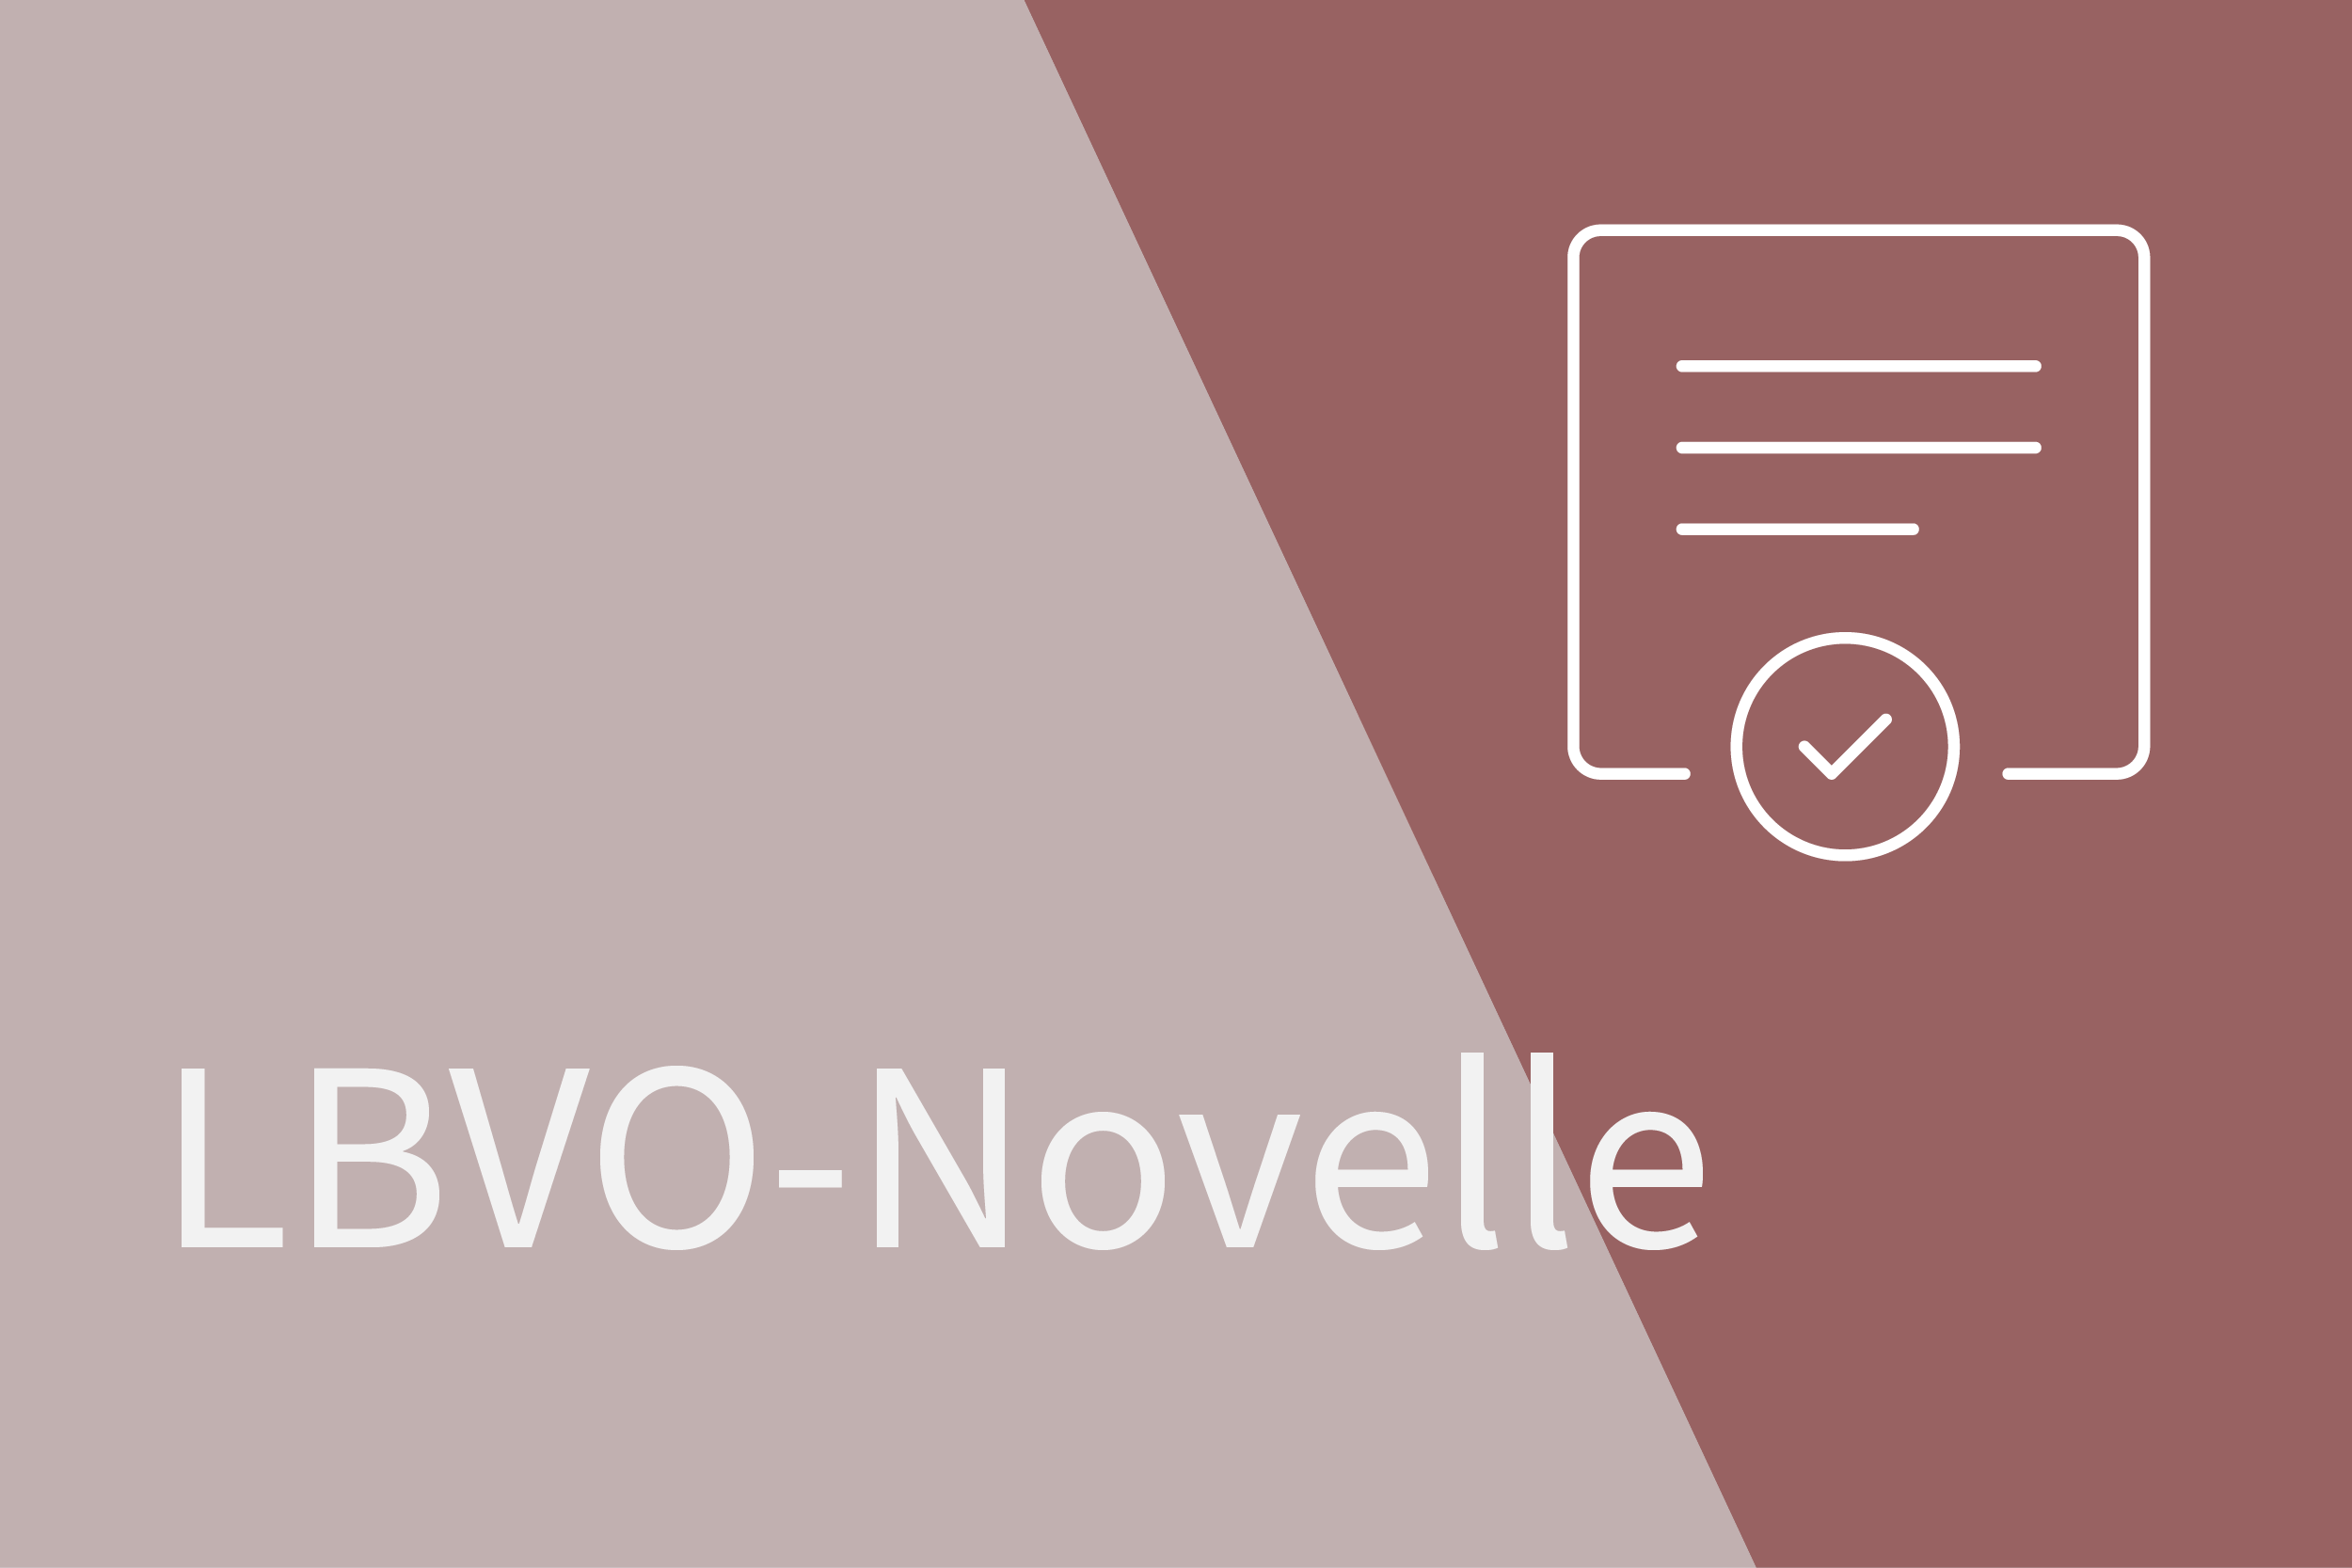 LBVO-Novelle